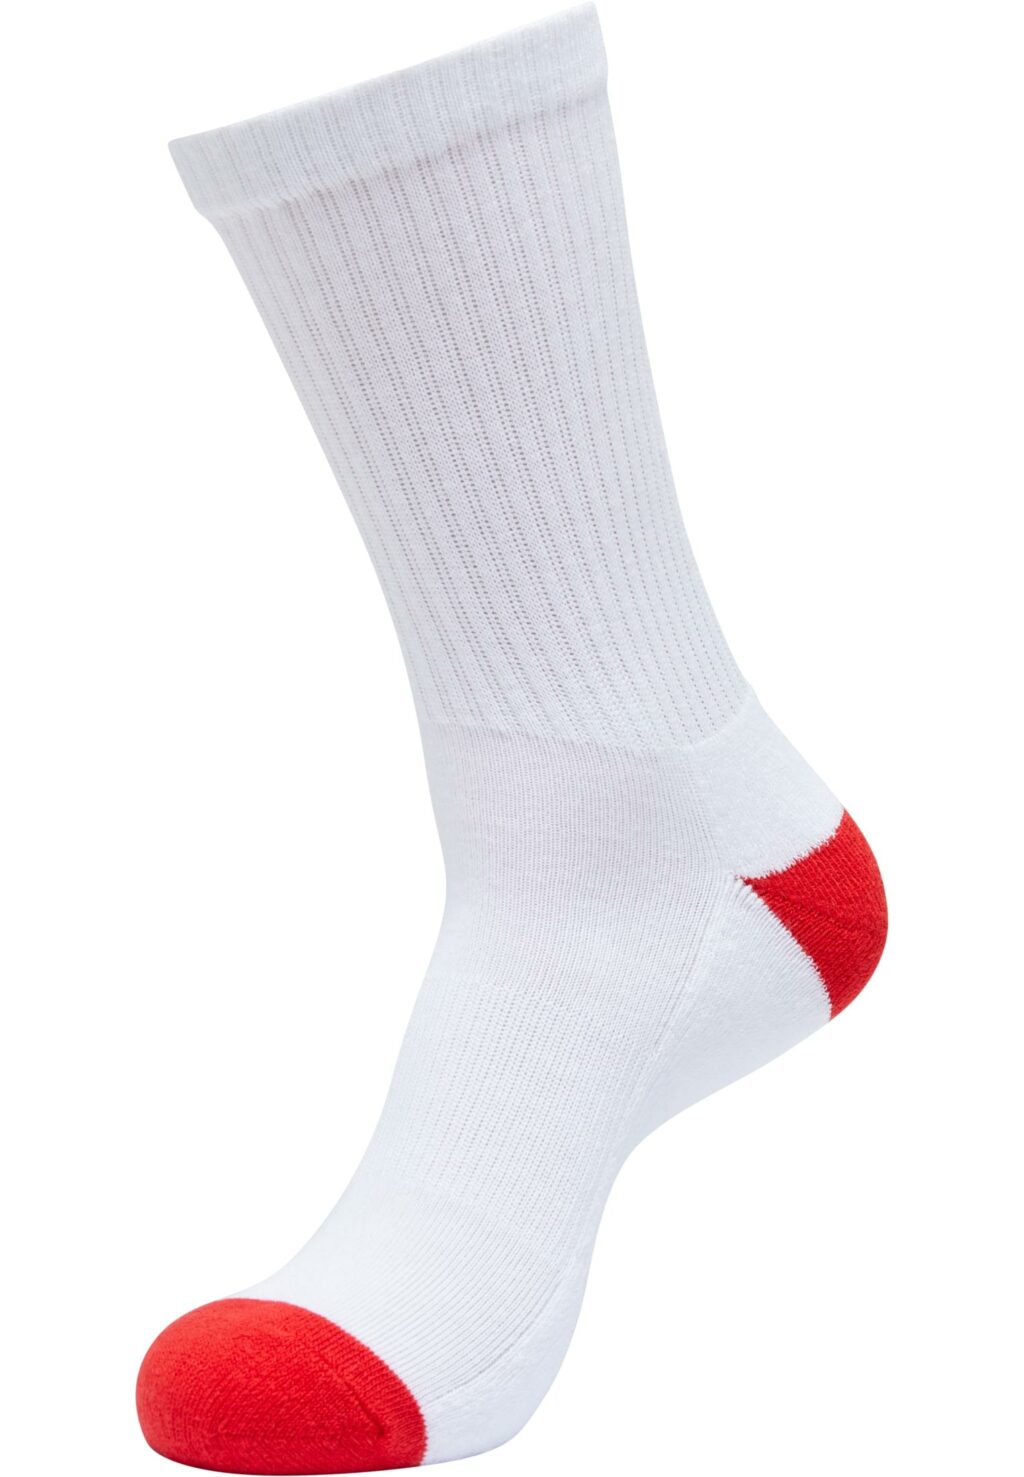 Colored Sport Socks 5-Pack white/black+white/black+white/black+white/cityred+white/midnightnavy TB6803